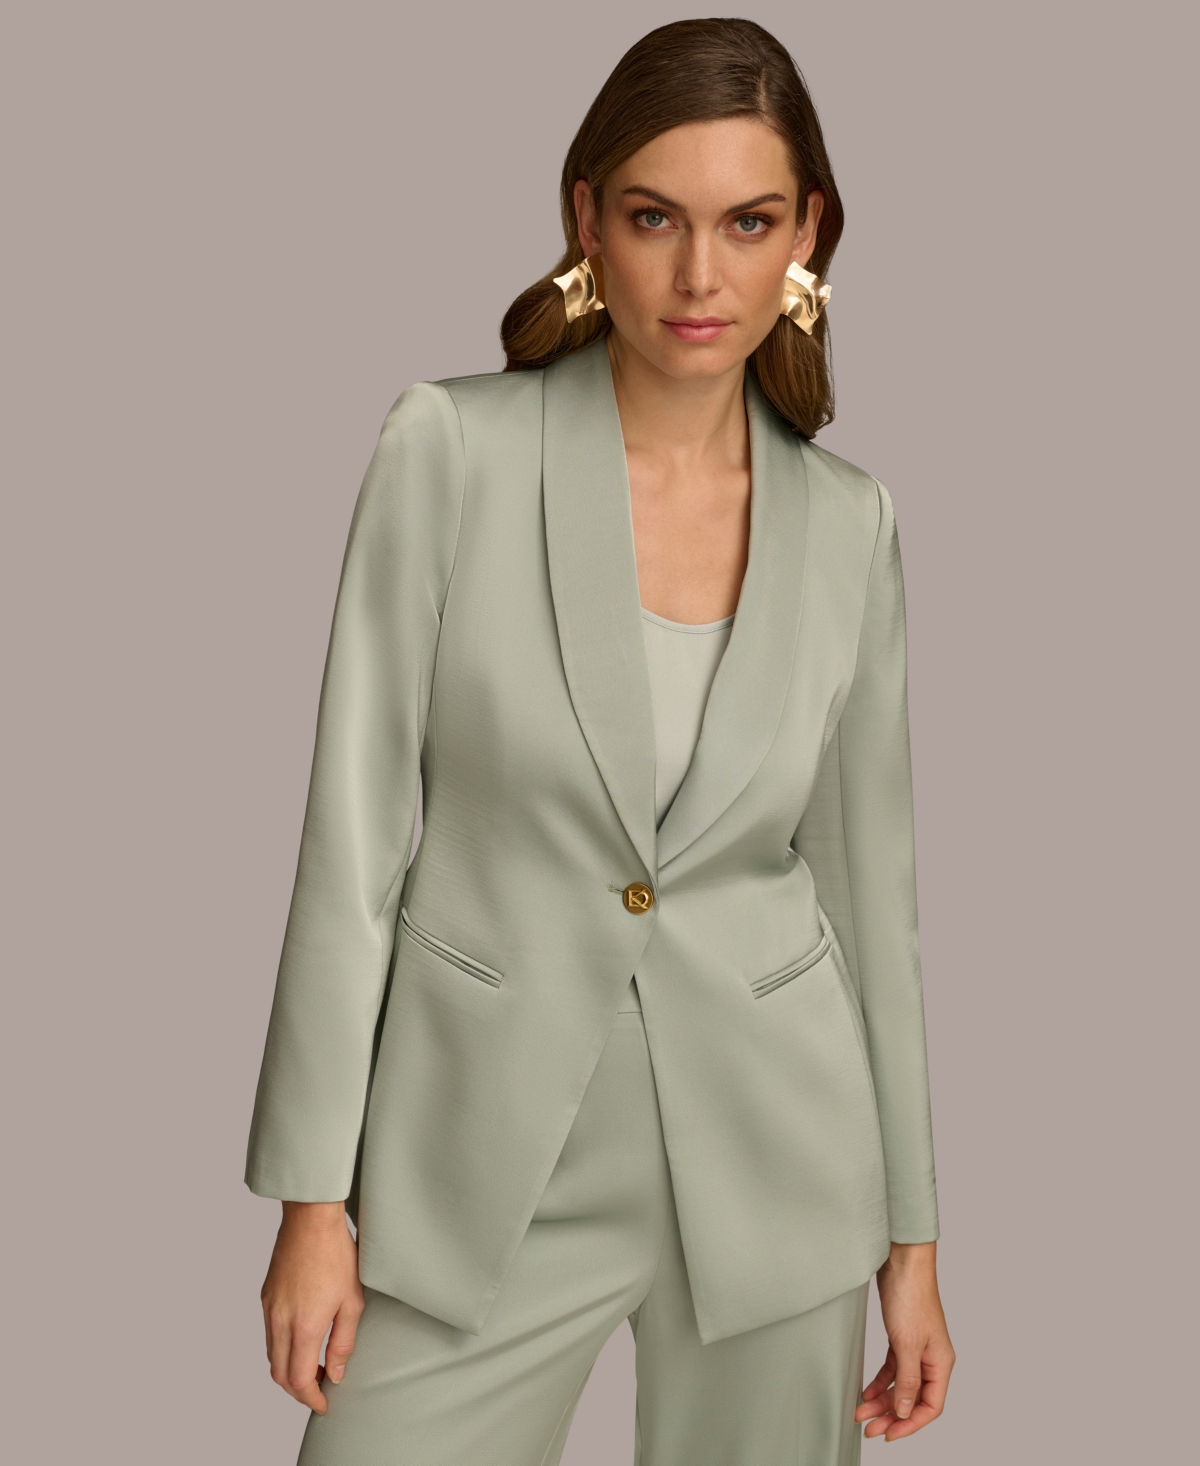 Women's One-Button Satin Jacket - Pale Jade